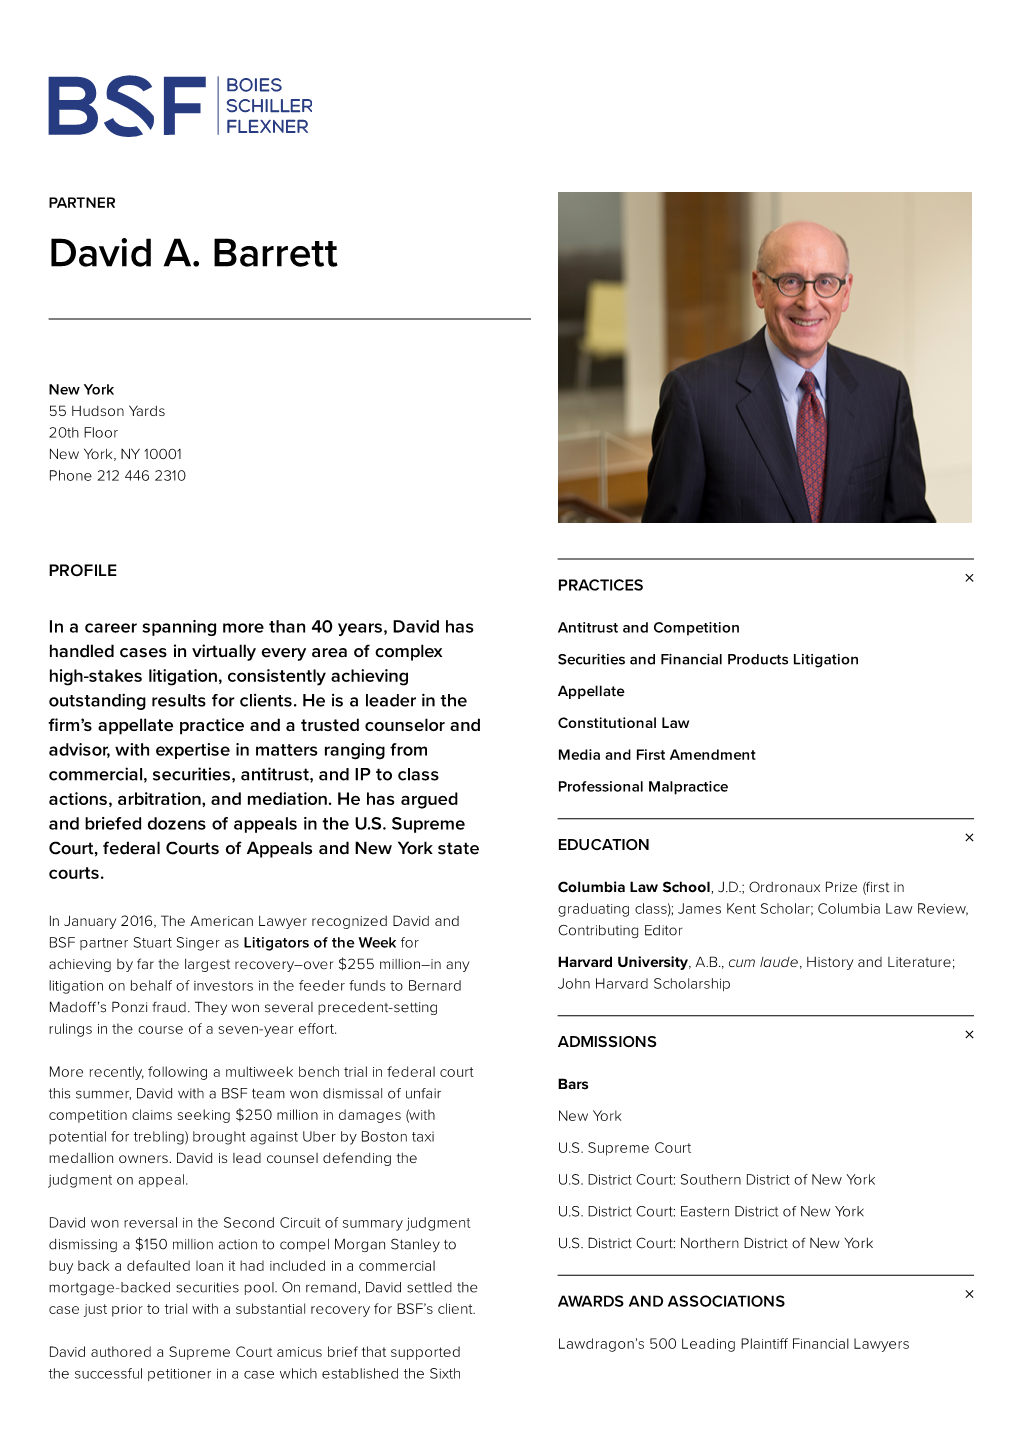 David A. Barrett